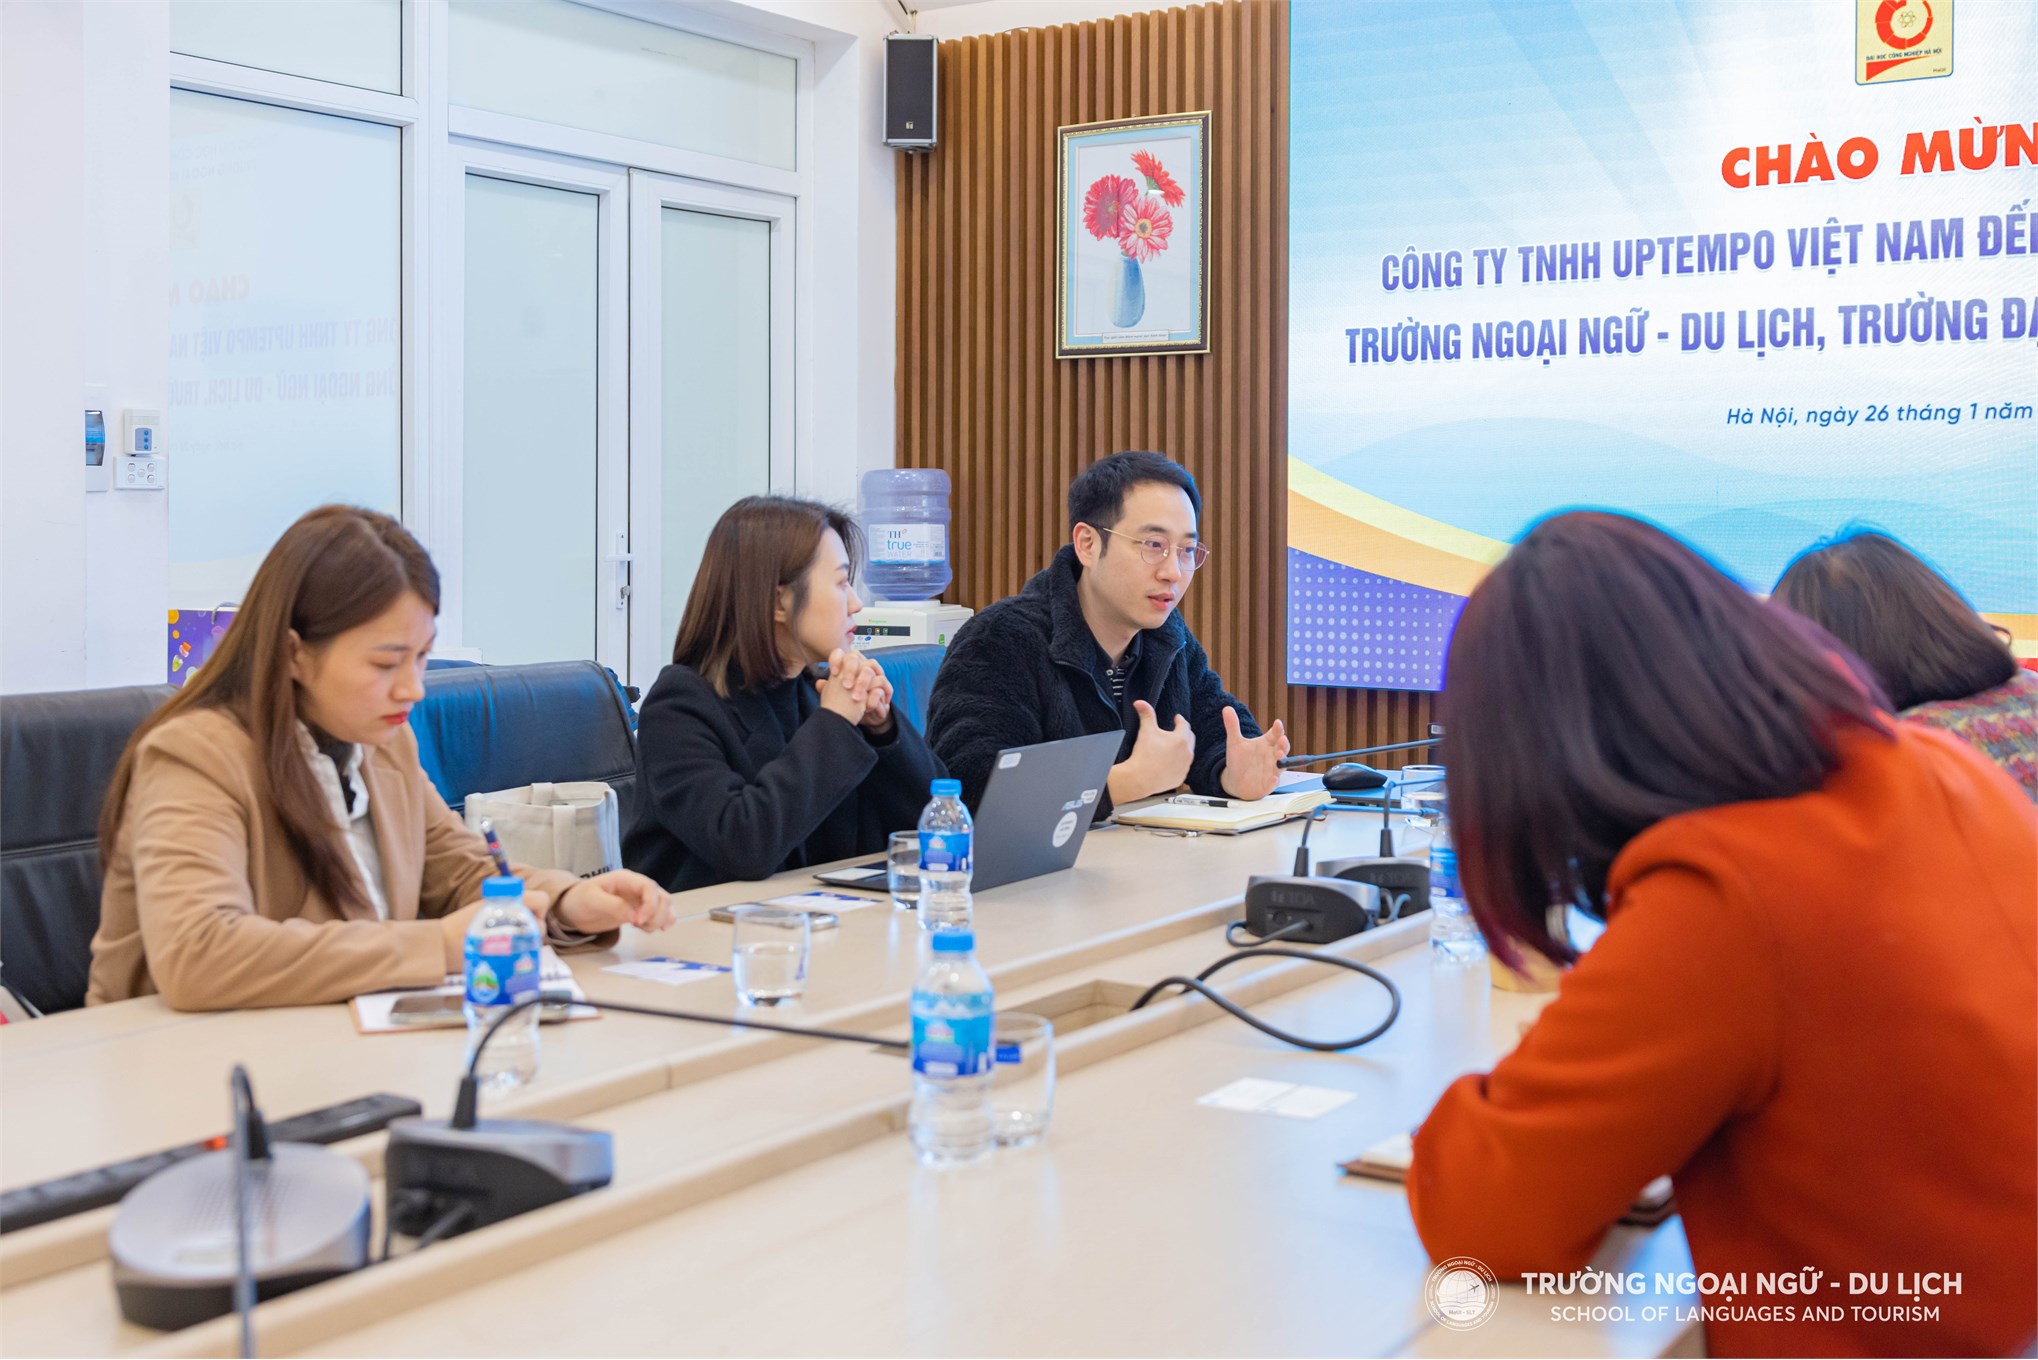 Trường Ngoại ngữ - Du lịch, Trường Đại học Công nghiệp Hà Nội đã tổ chức đón tiếp đoàn công tác Công ty TNHH UPTEMPO Việt Nam